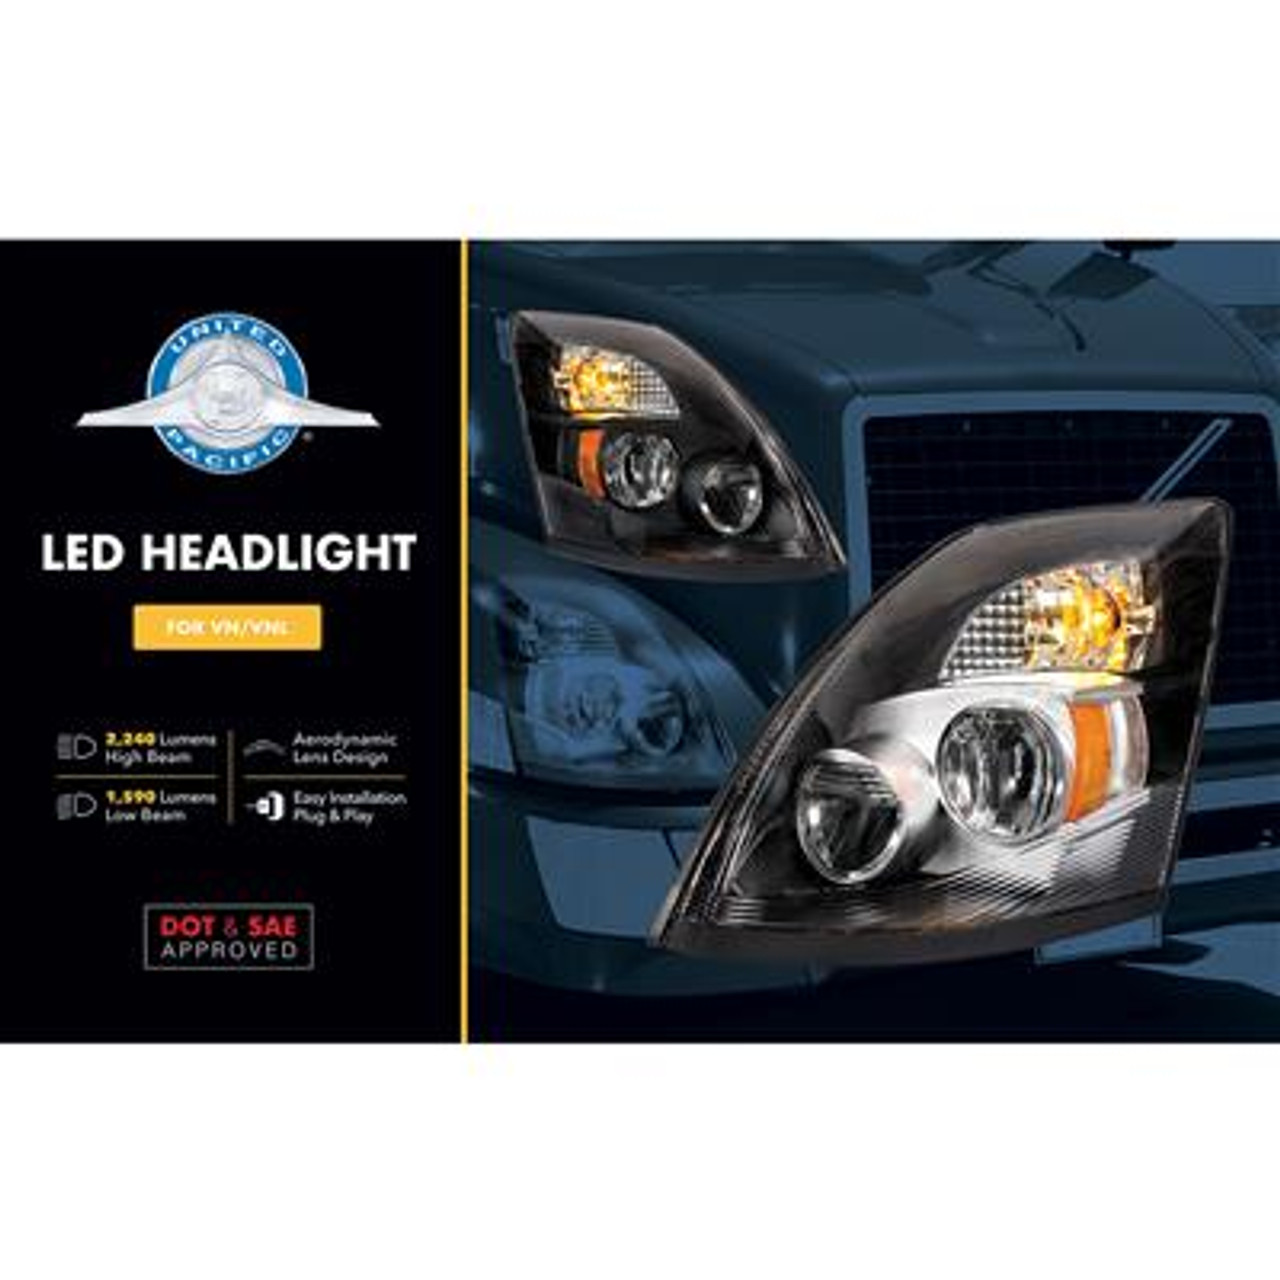 High Power LED Passenger Side Headlight for 2003-2017 Volvo VN/VNL